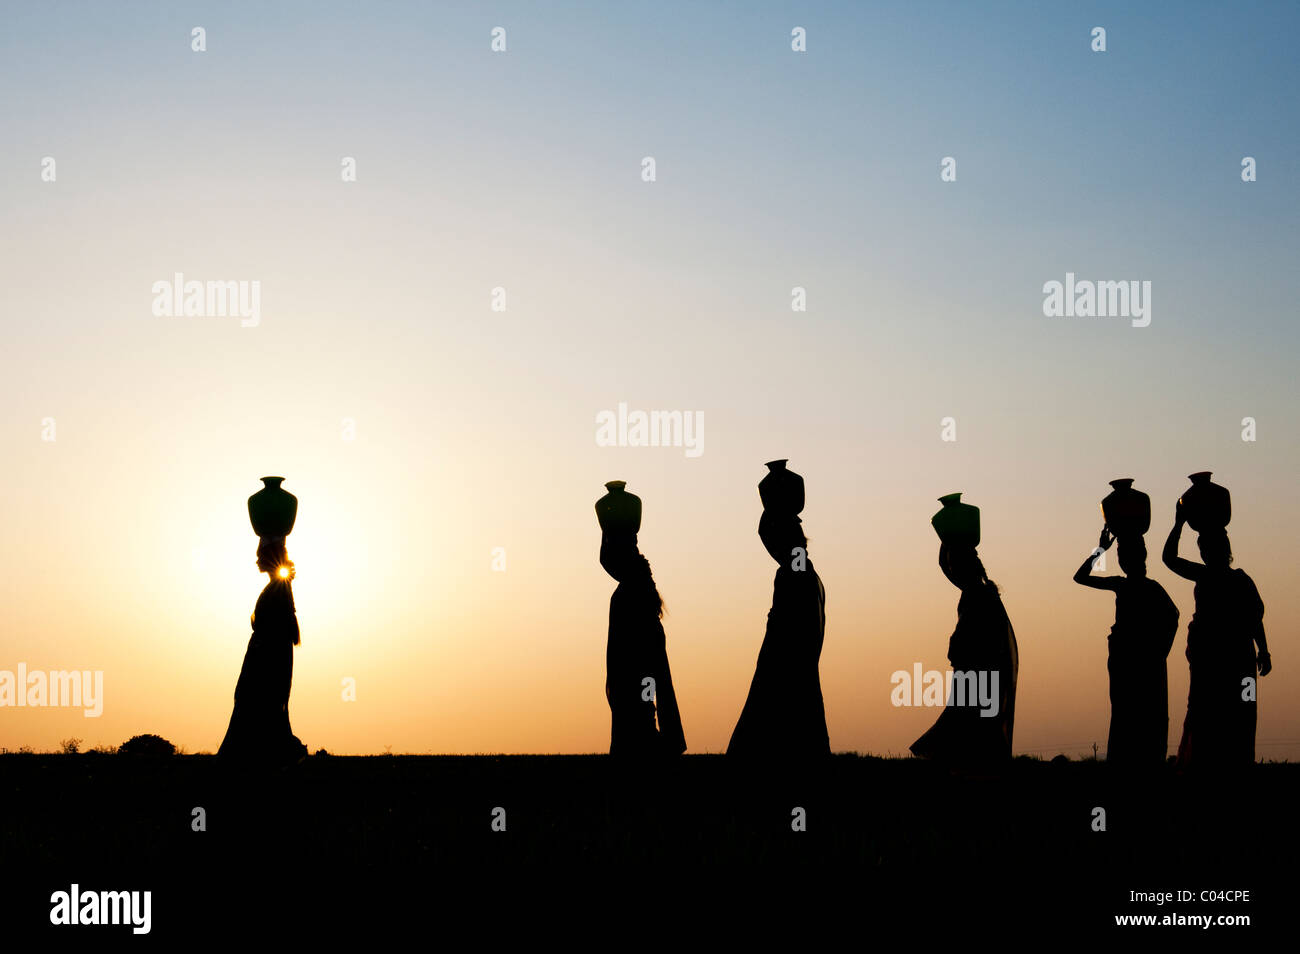 Groupe de femmes indiennes balade au coucher du soleil à transporter de l'eau sur leurs têtes des pots dans la campagne indienne. Silhouette Banque D'Images